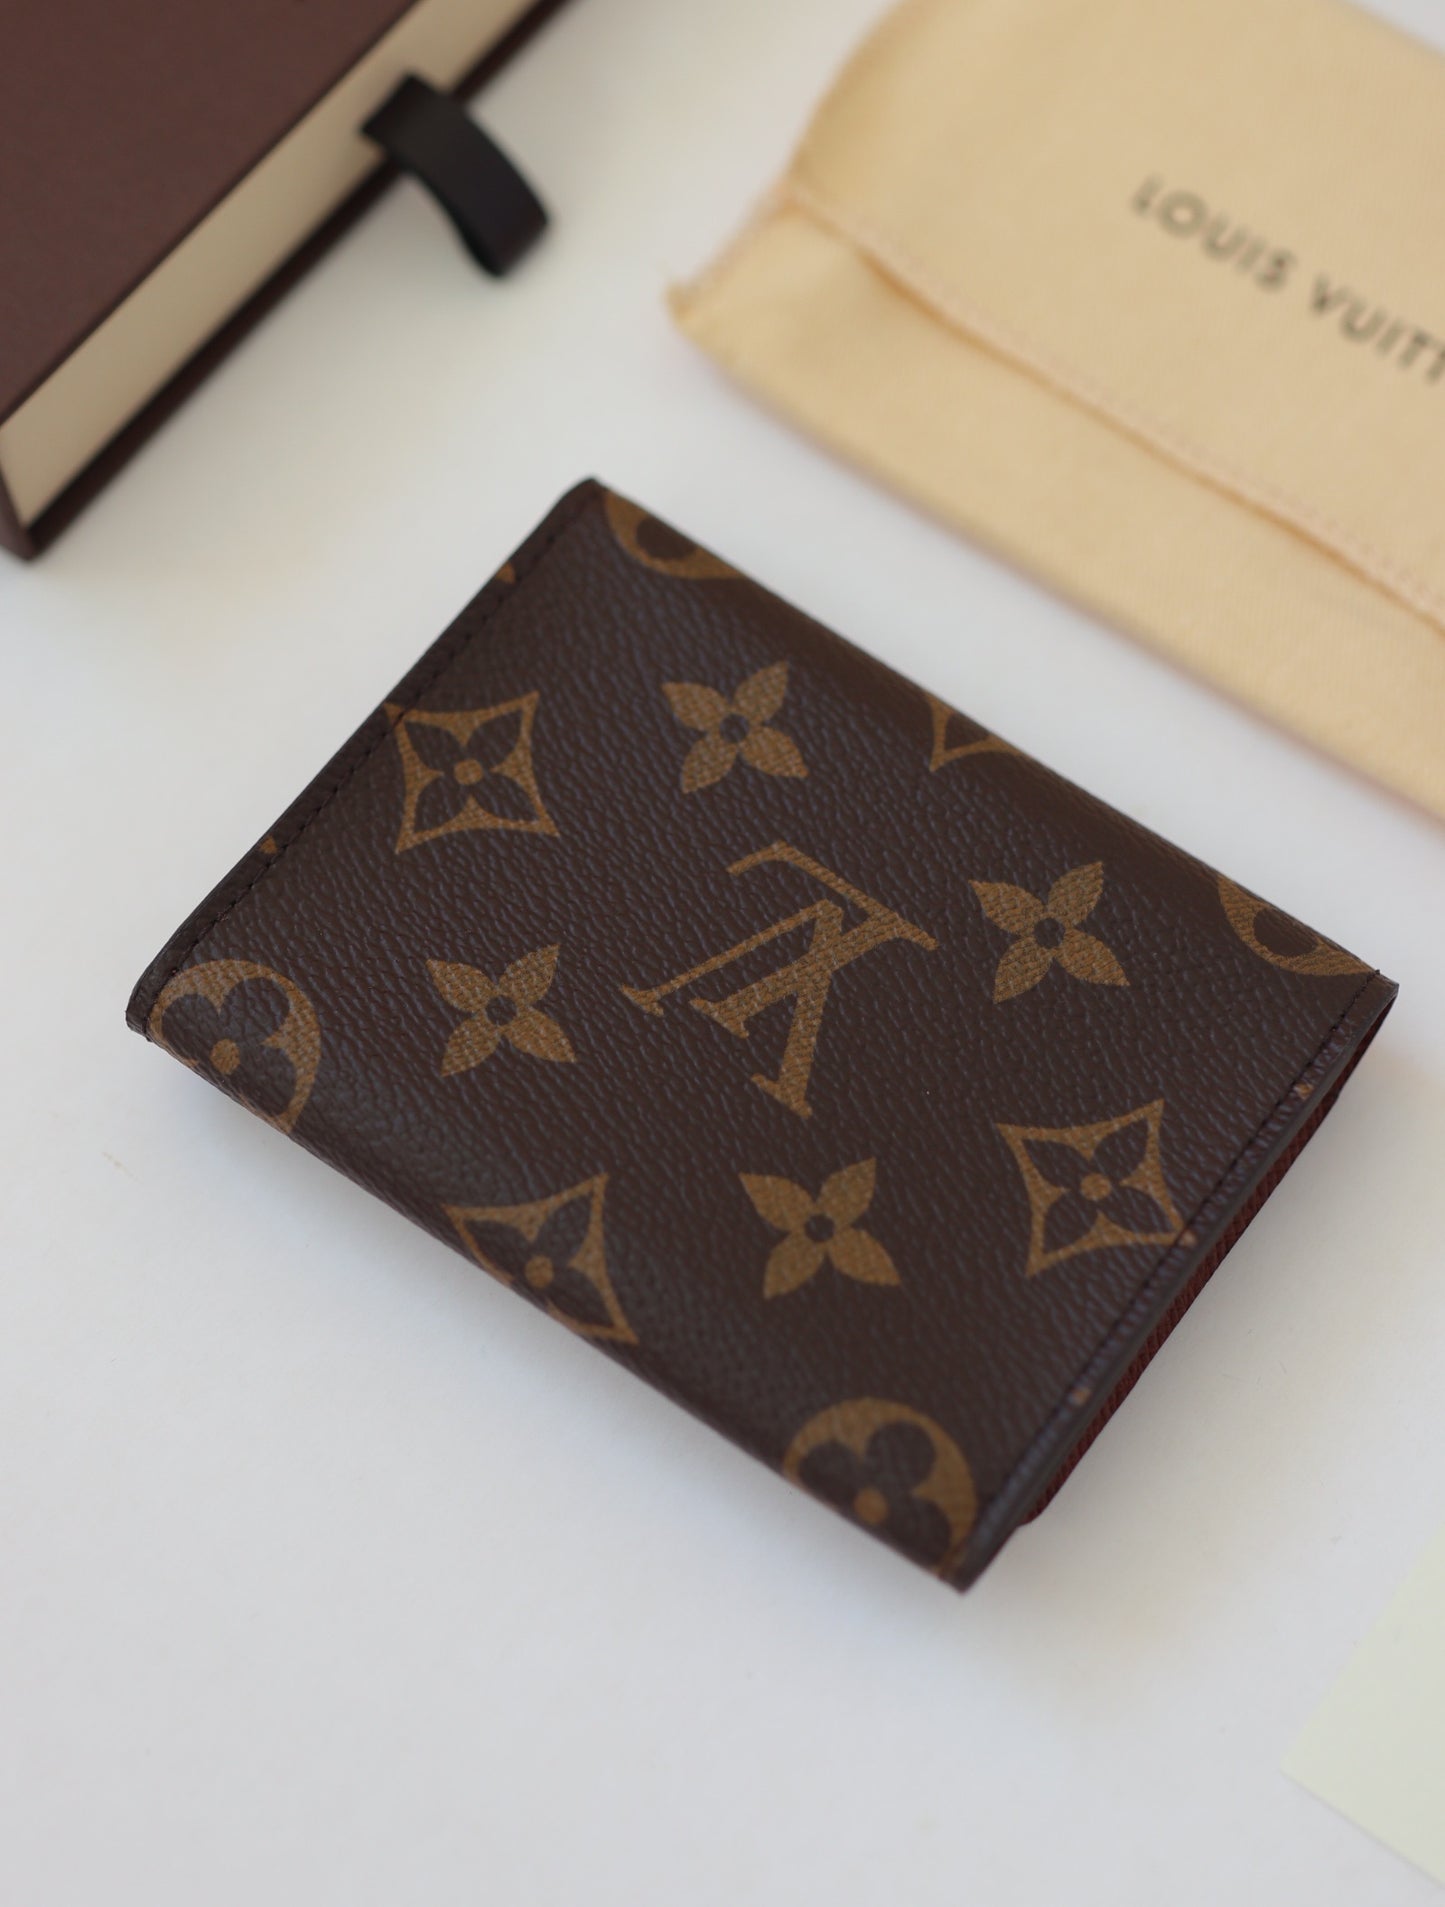 Louis Vuitton cardholder